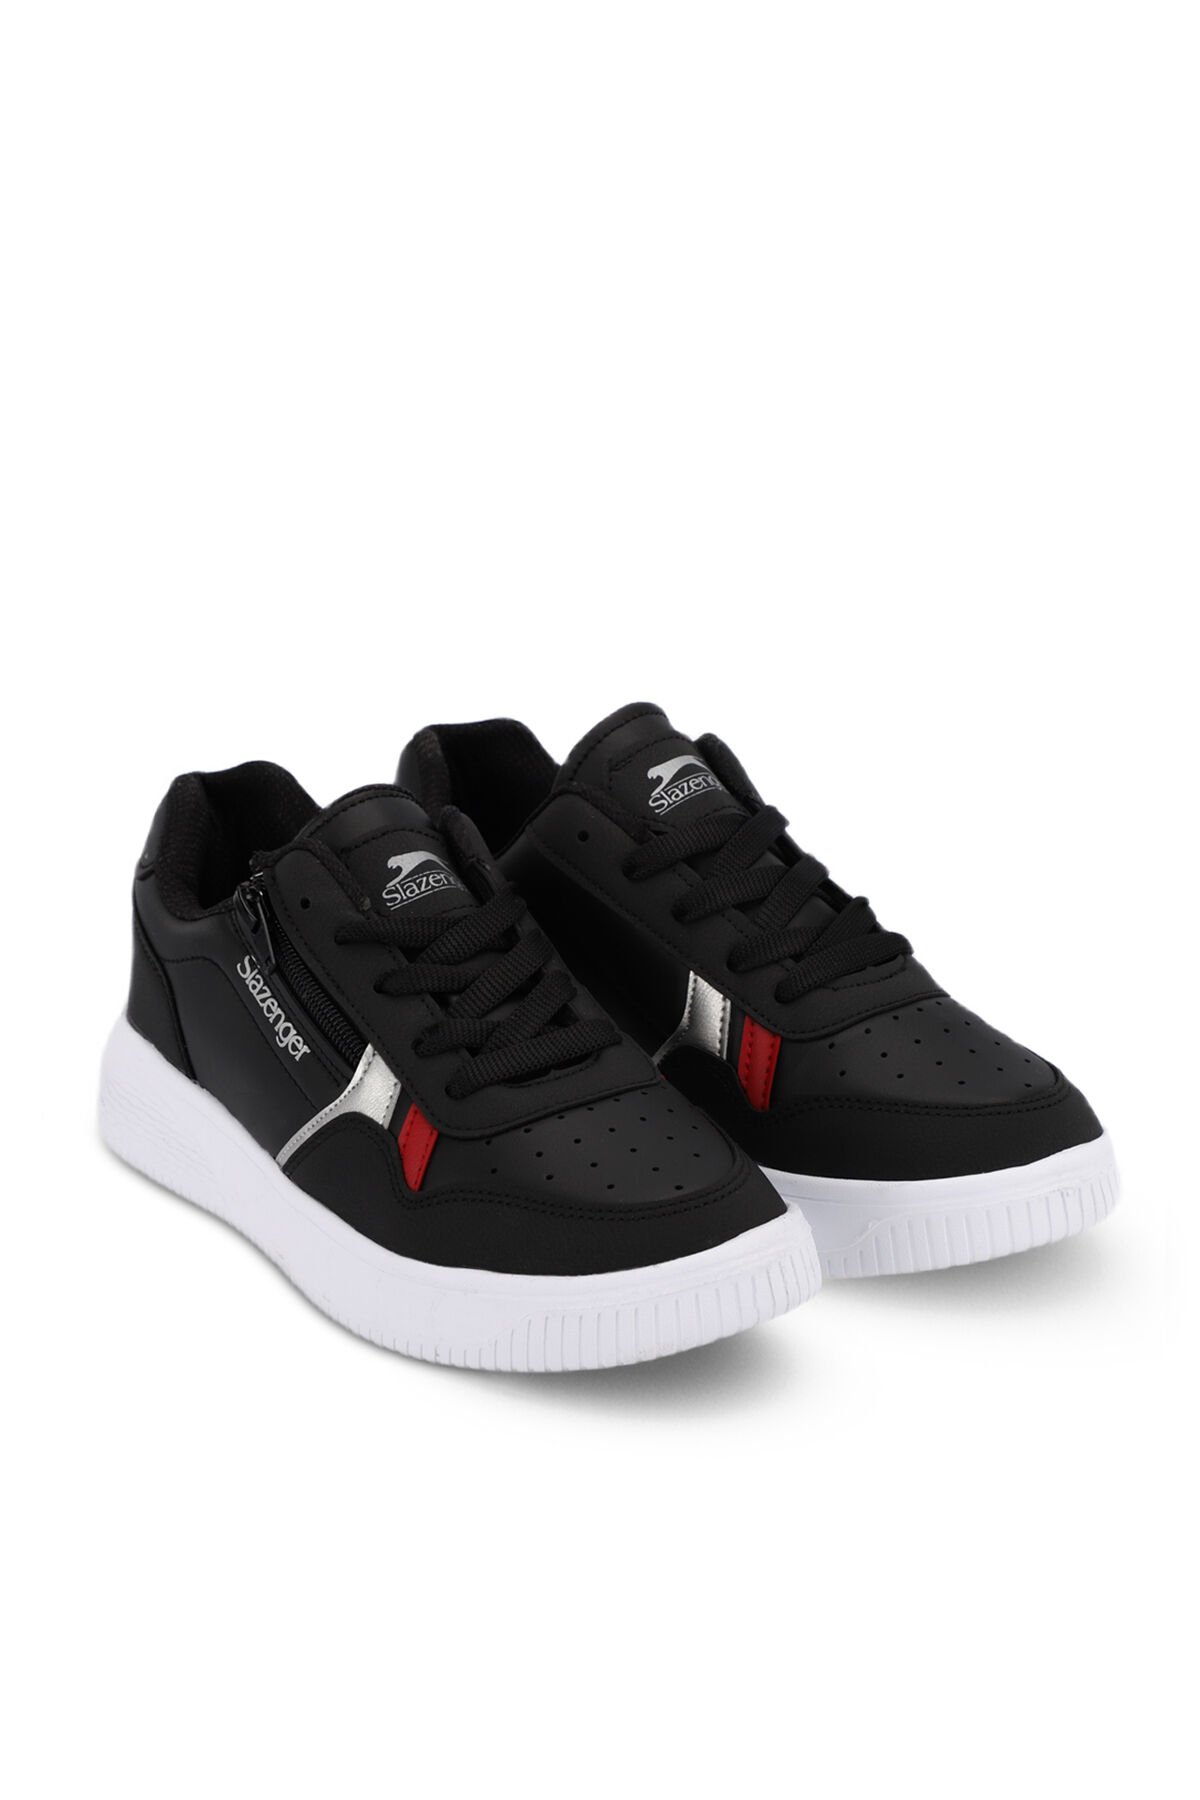 MAJORITY I Sneaker Kadın Ayakkabı Siyah / Beyaz - Thumbnail